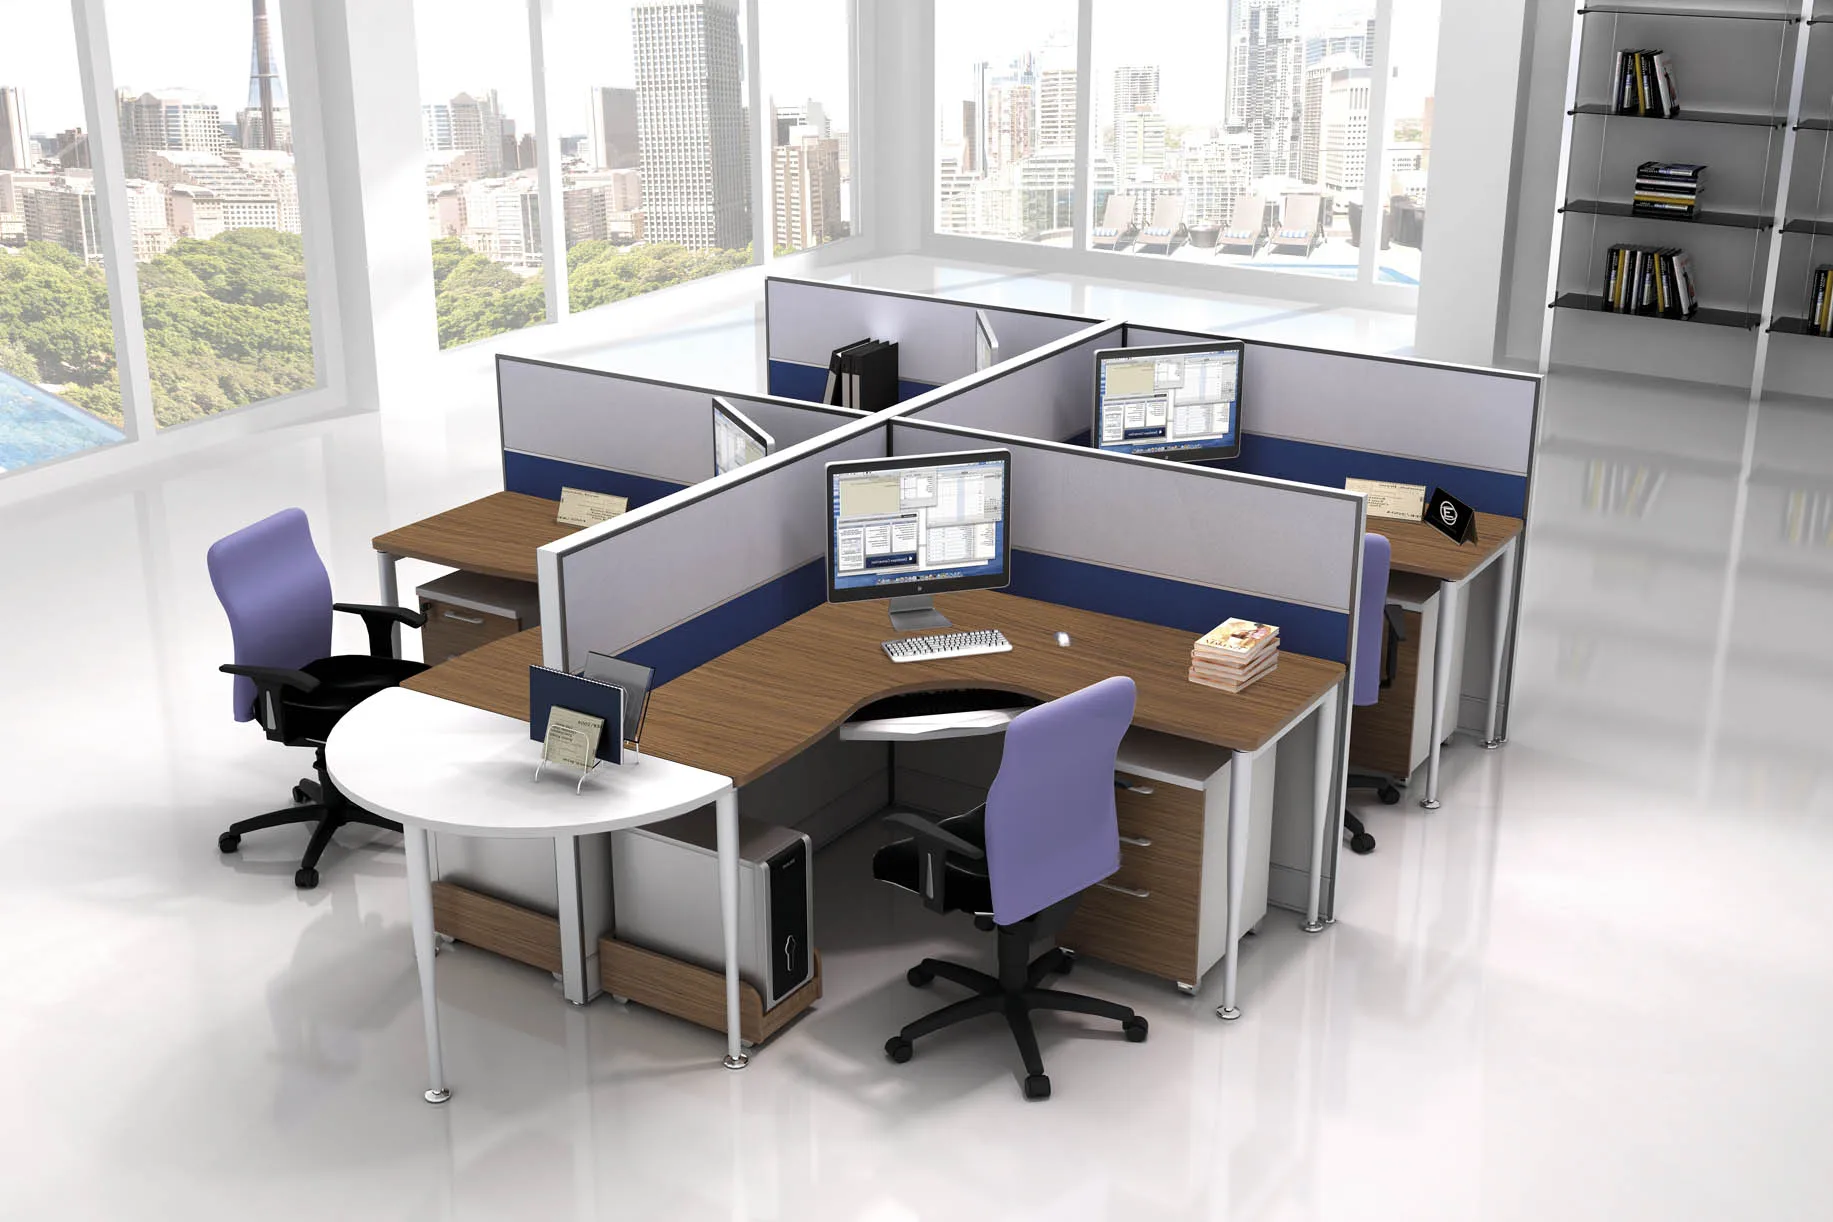 Между столами в офисе. Стол офисный. Столы с перегородками для офиса. Современная офисная мебель. Расположение столов в офисе.